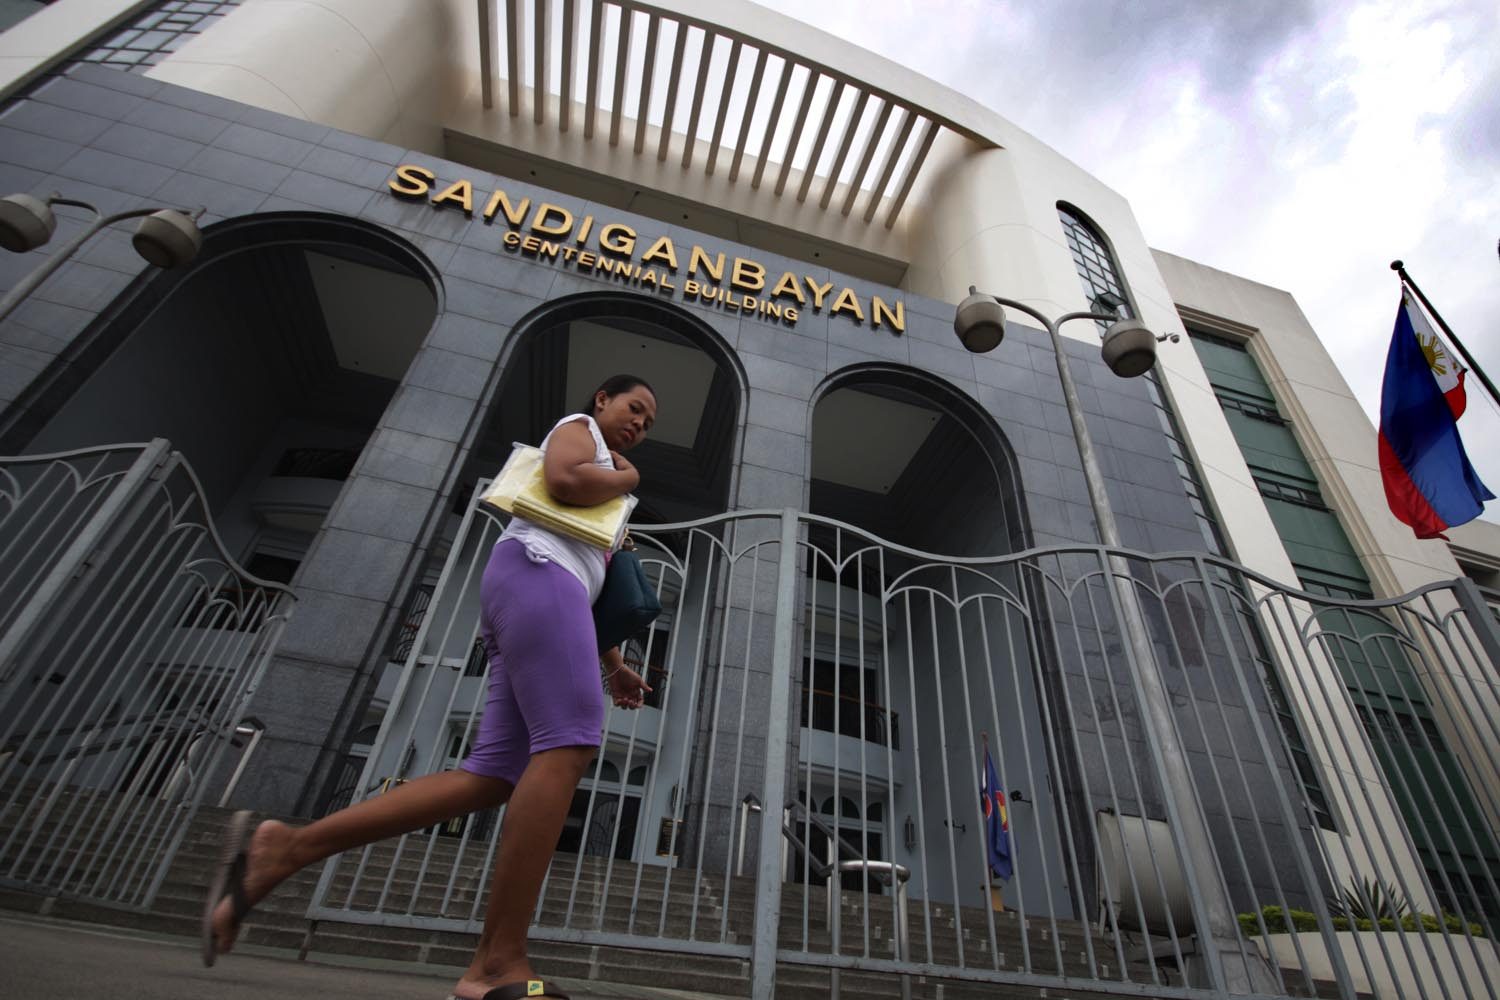 Sandiganbayan drops another fertilizer fund scam case due to delay